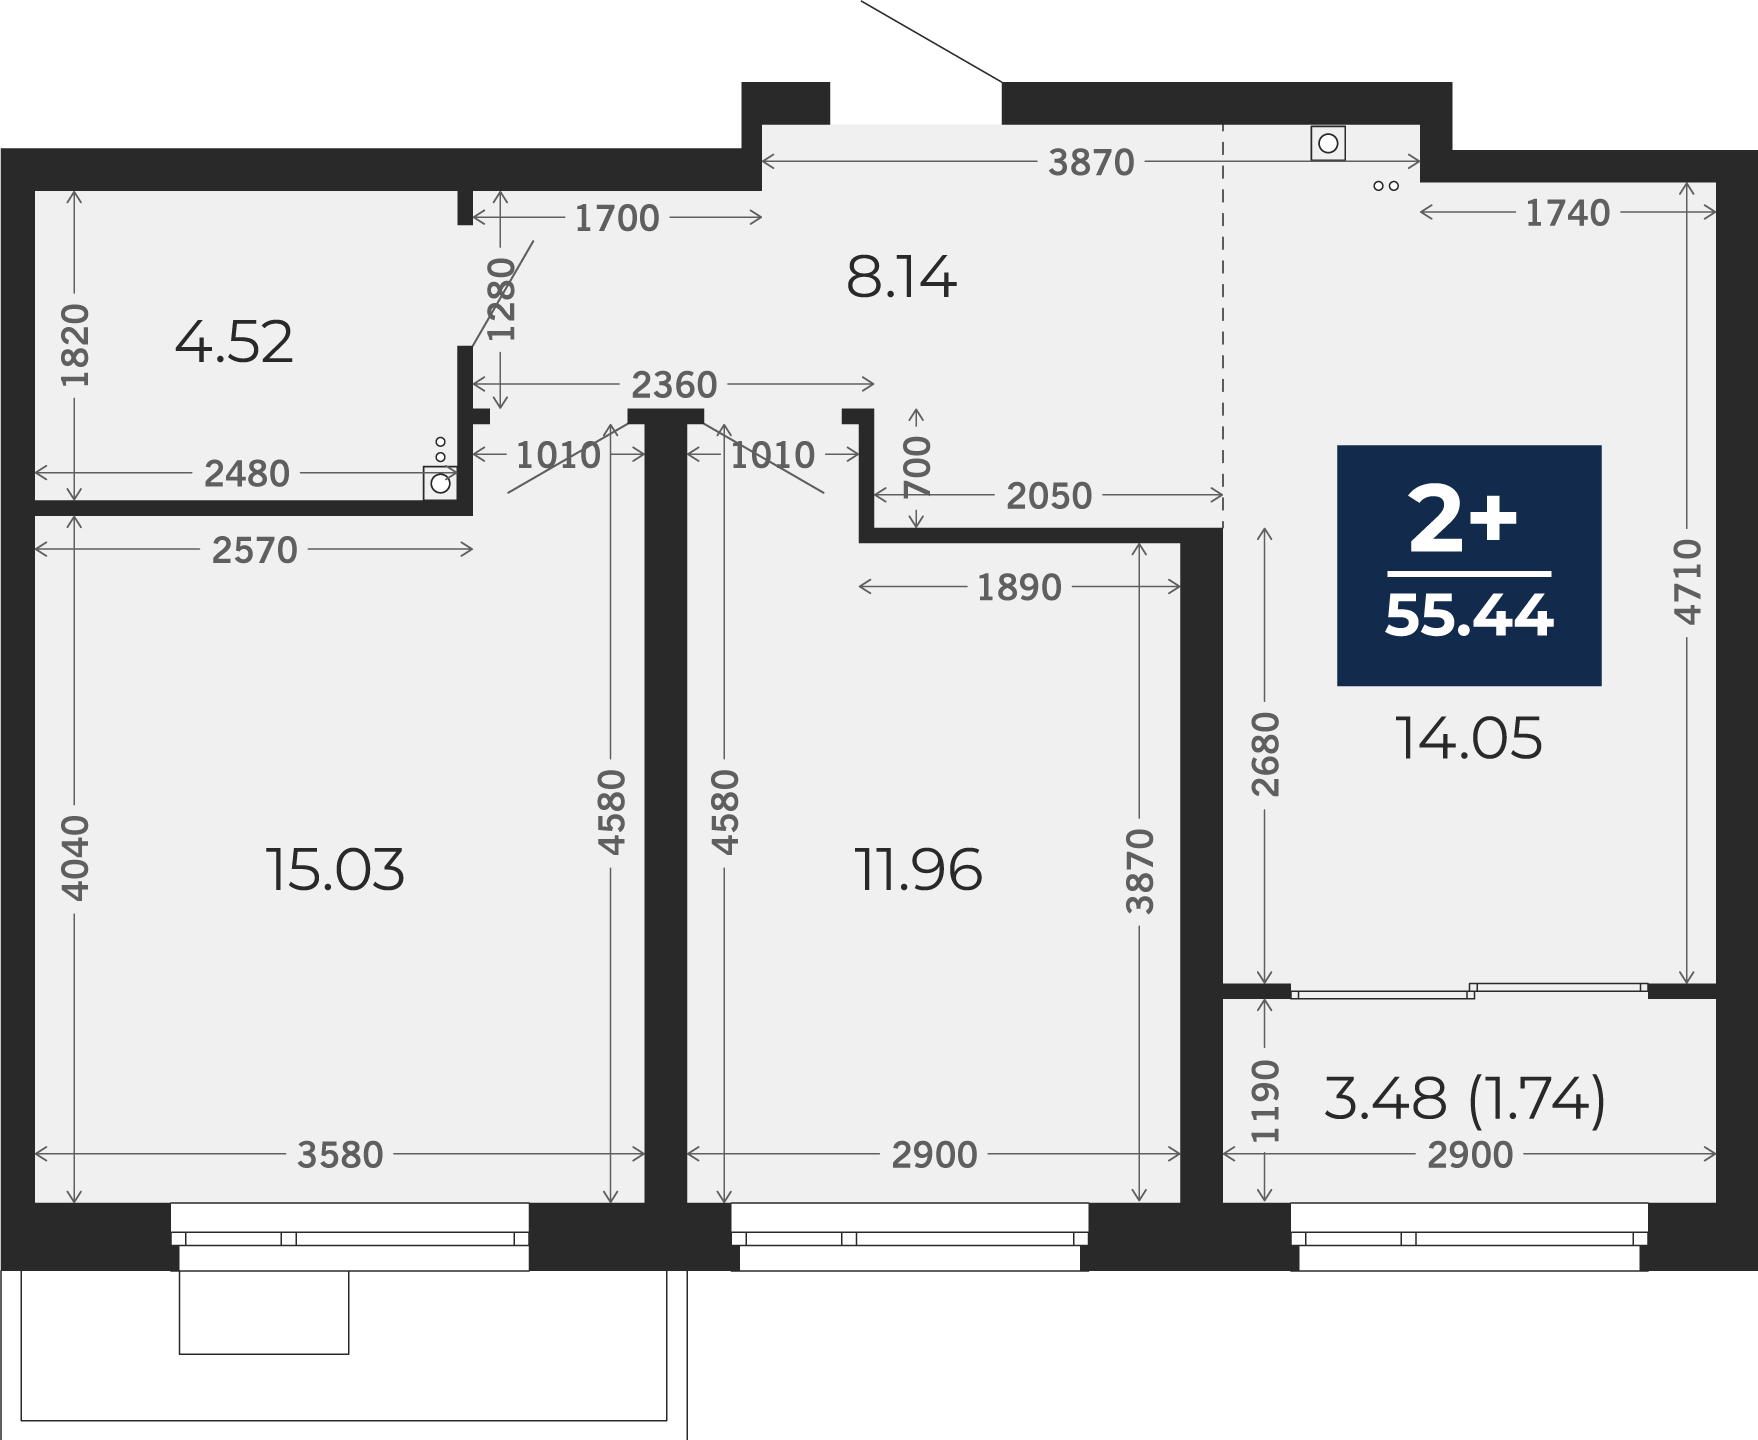 Квартира № 127, 2-комнатная, 55.44 кв. м, 2 этаж